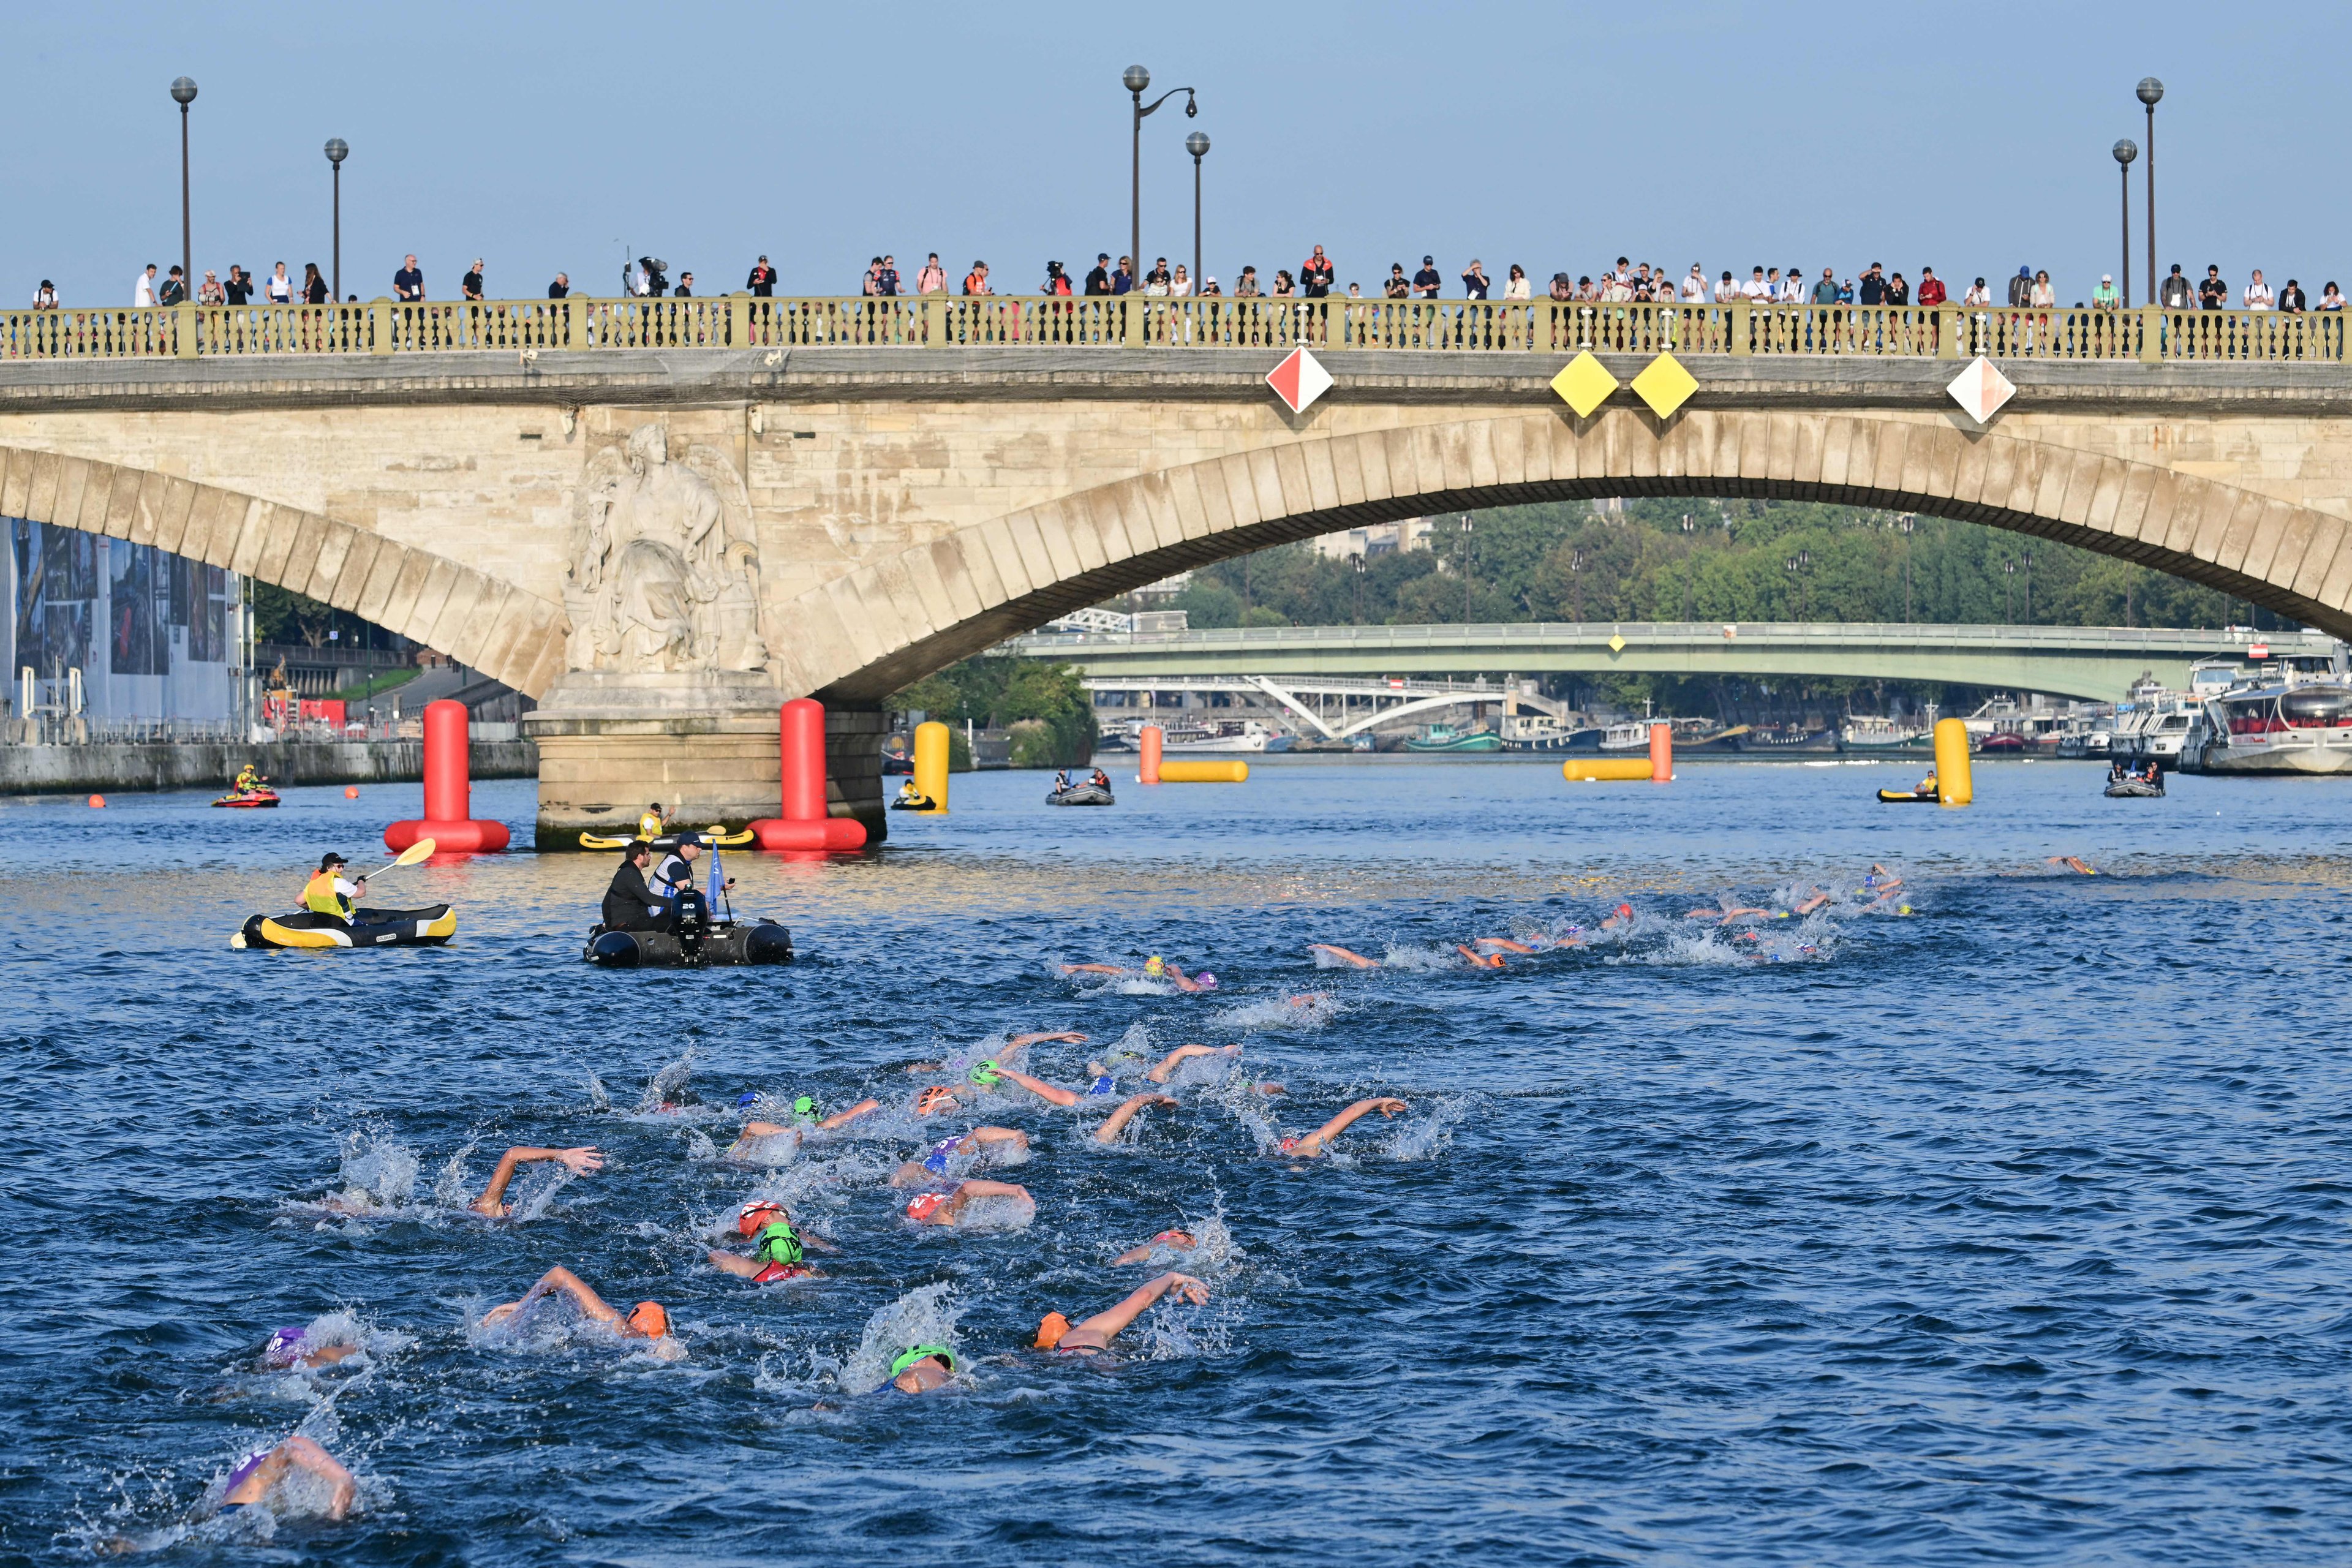 Competição de Triatlo no Rio Sena - condições do rio durante no caso de chuva pode adiar maratona aquática nos jogos olímpicos